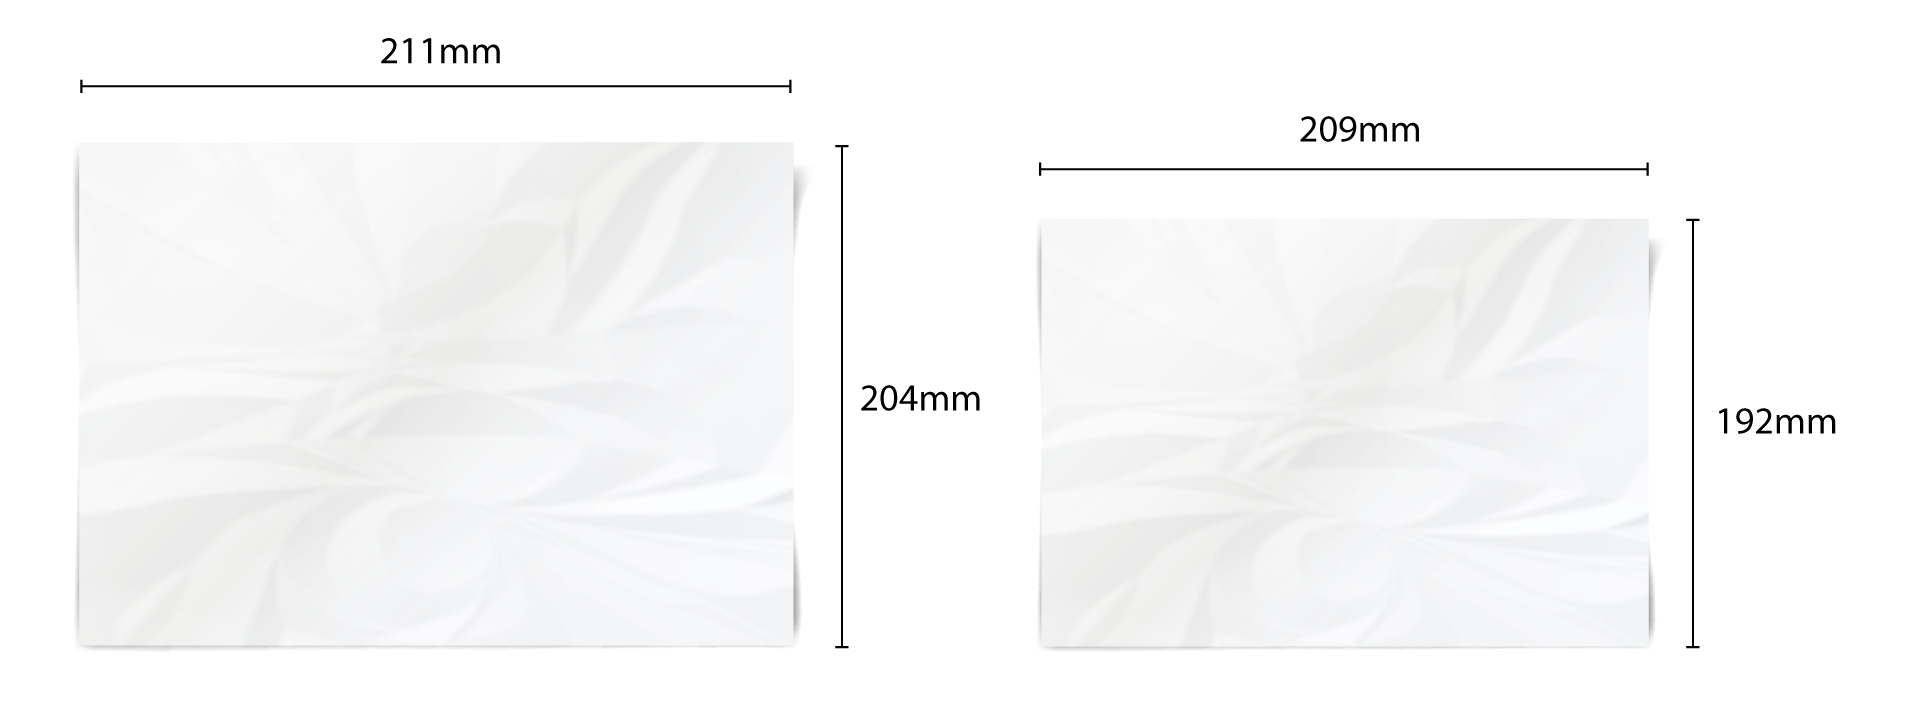 Fine Tissue Paper Measurements Image